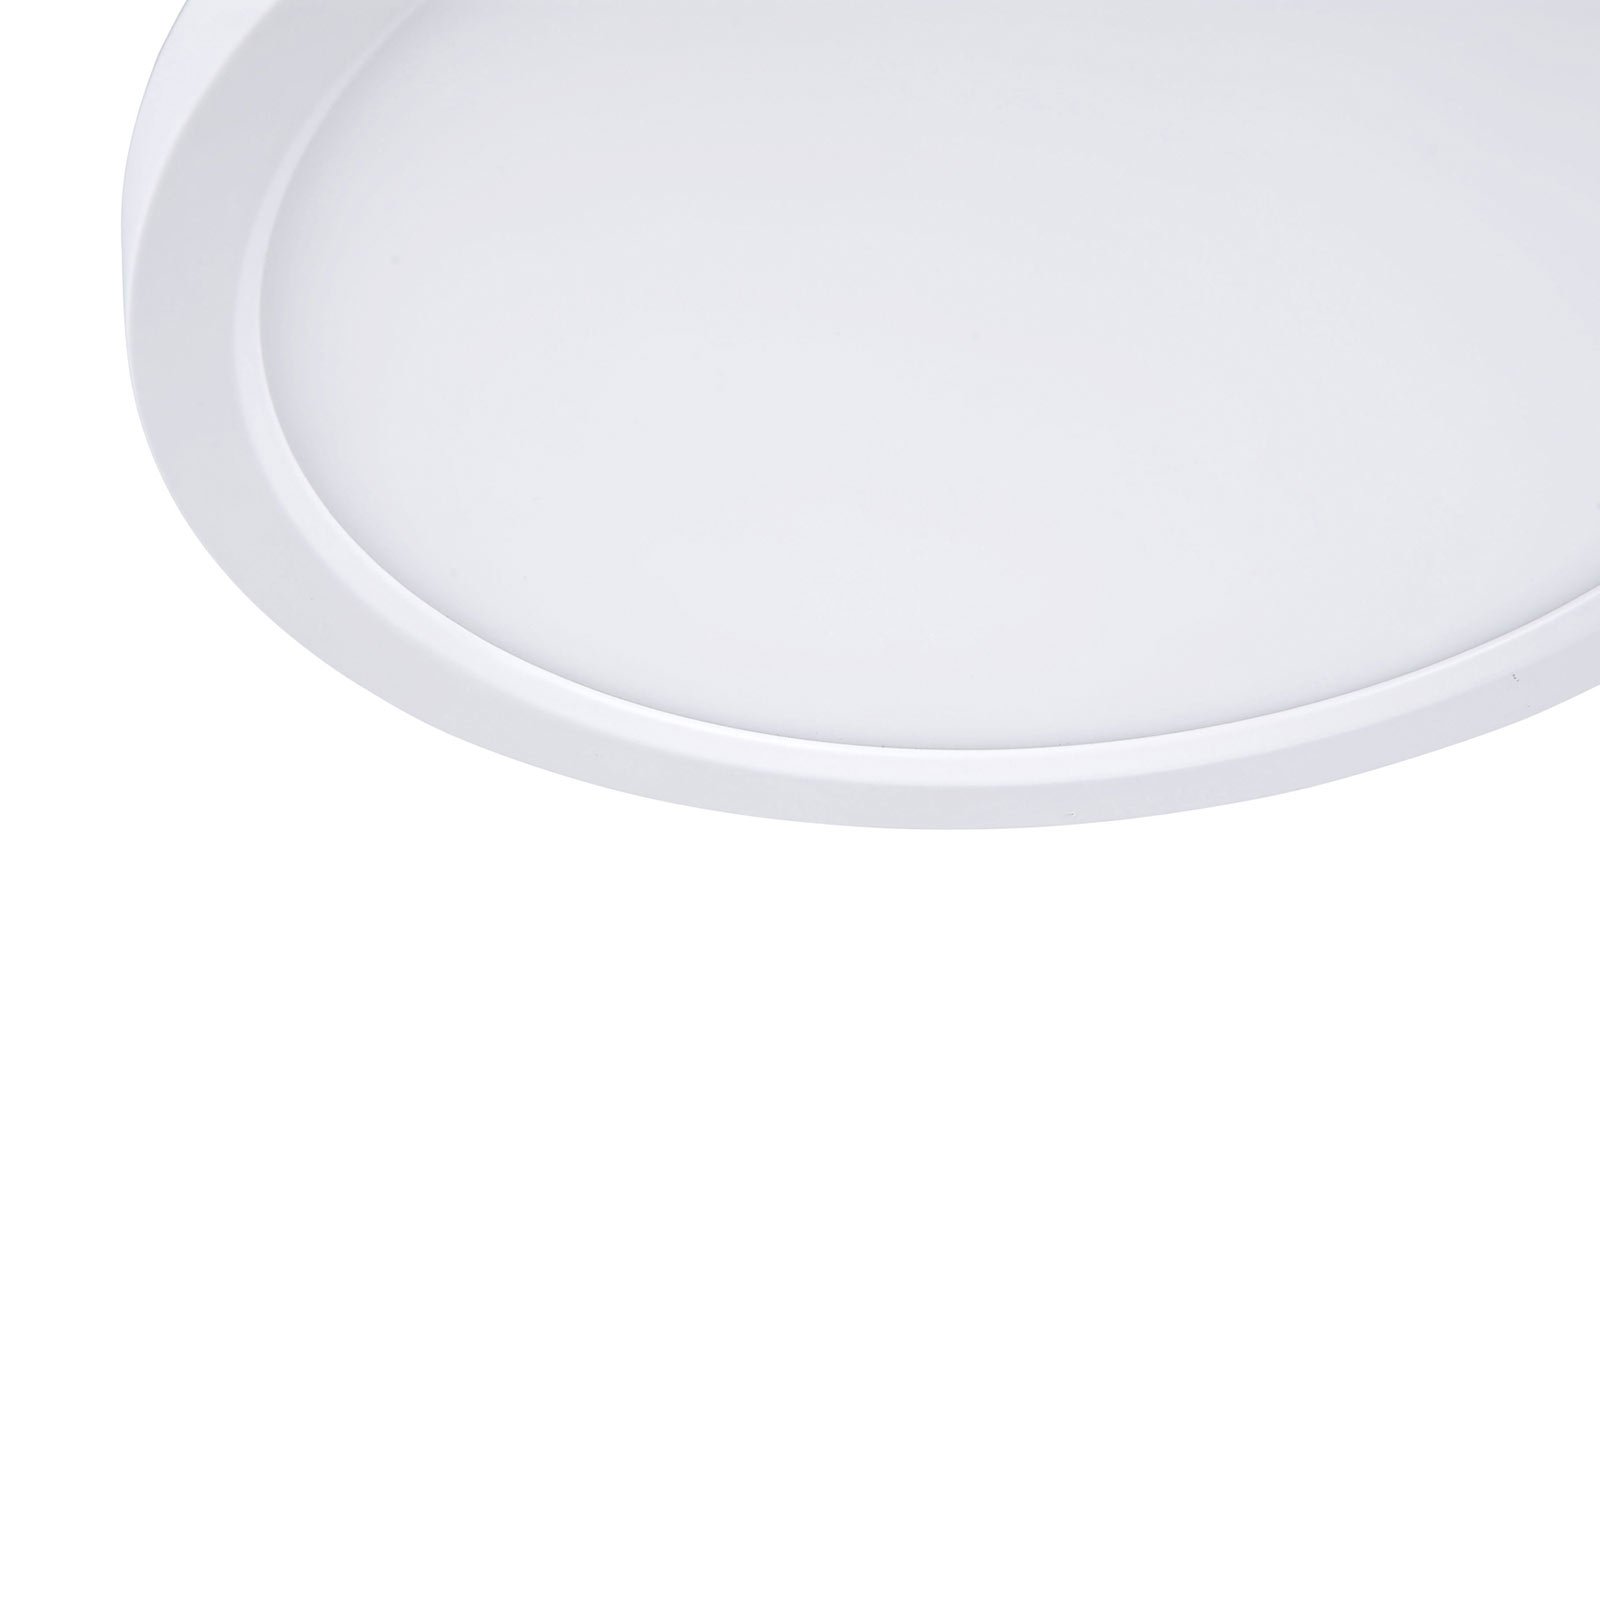 Flat LED-taklampe CCT, Ø 40 cm, hvit